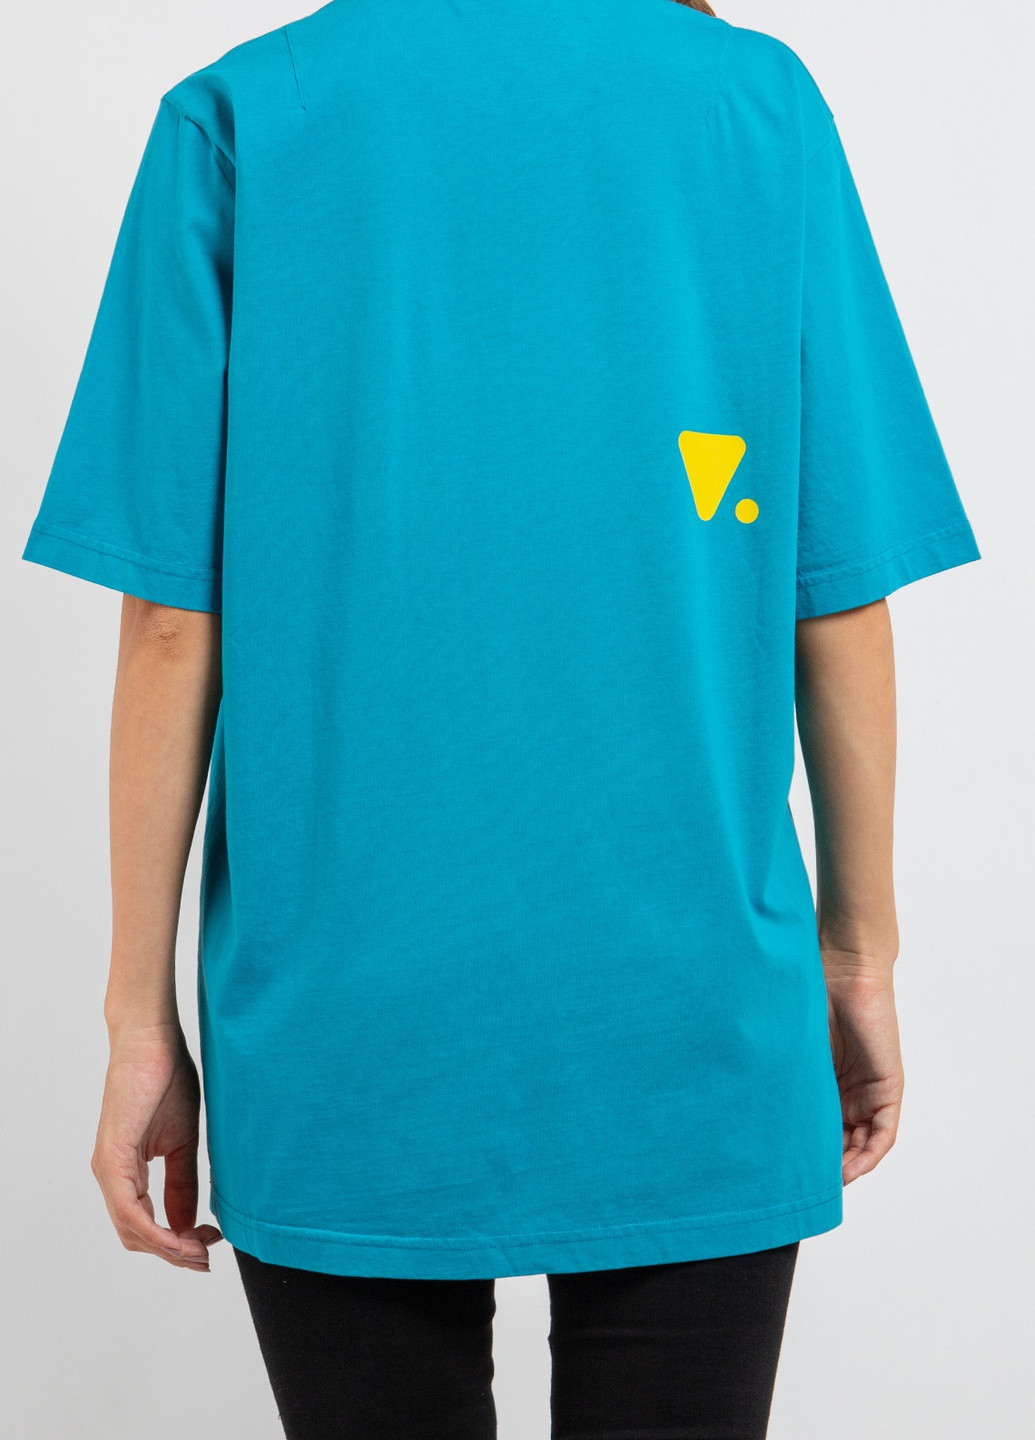 Голубая футболка с логотипом цвета морской волны Valvola